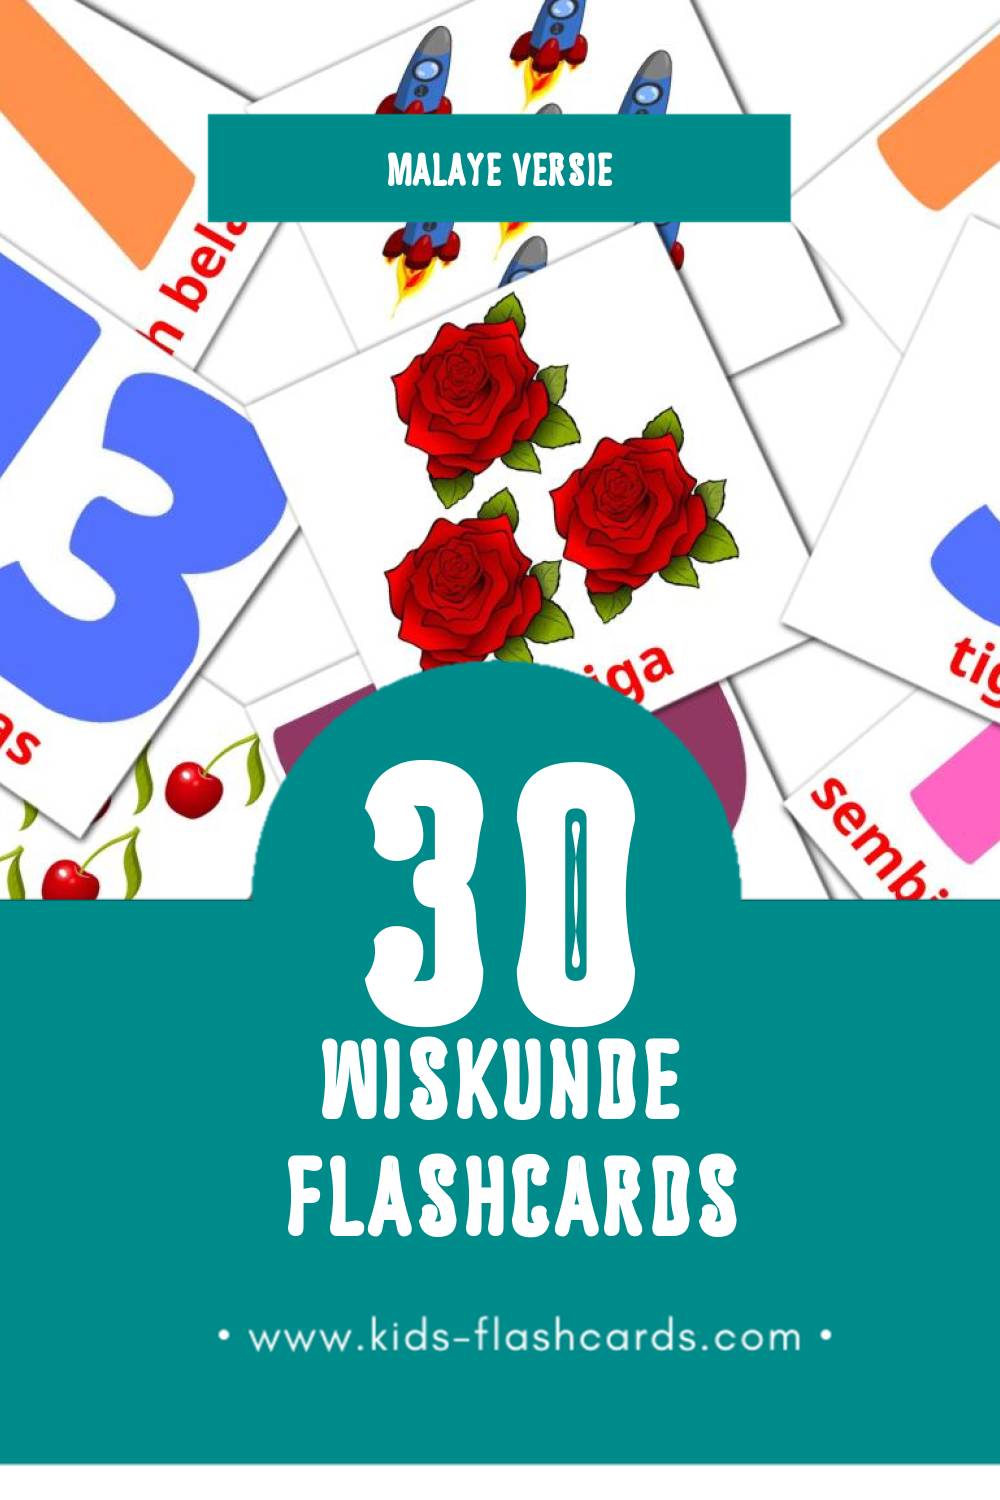 Visuele Matematik Flashcards voor Kleuters (30 kaarten in het Malay)